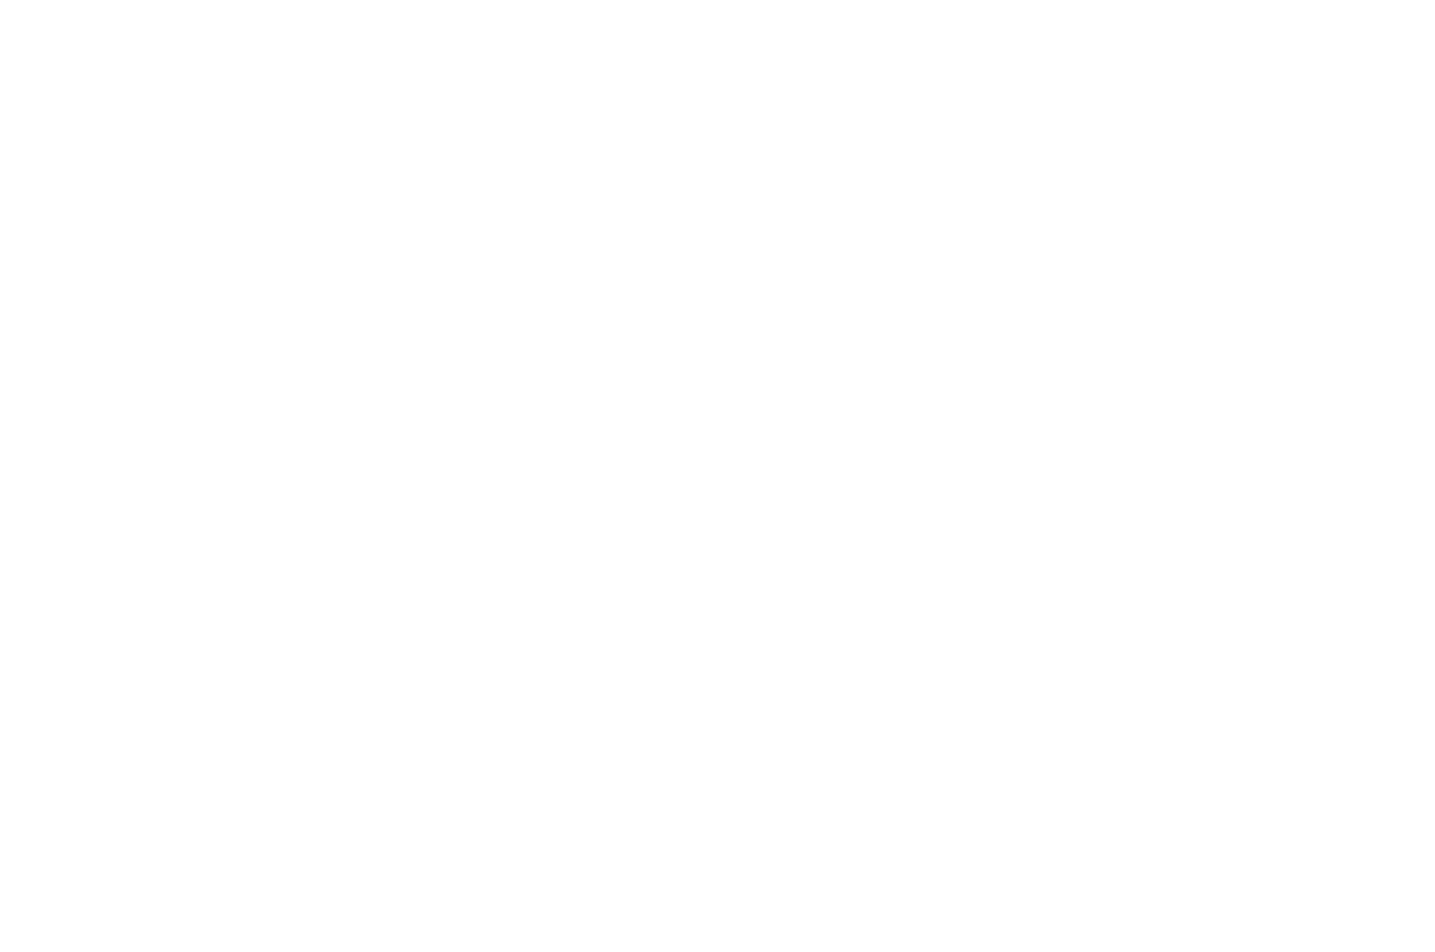 Official Selection Nashville Film Festival 2019 laurel